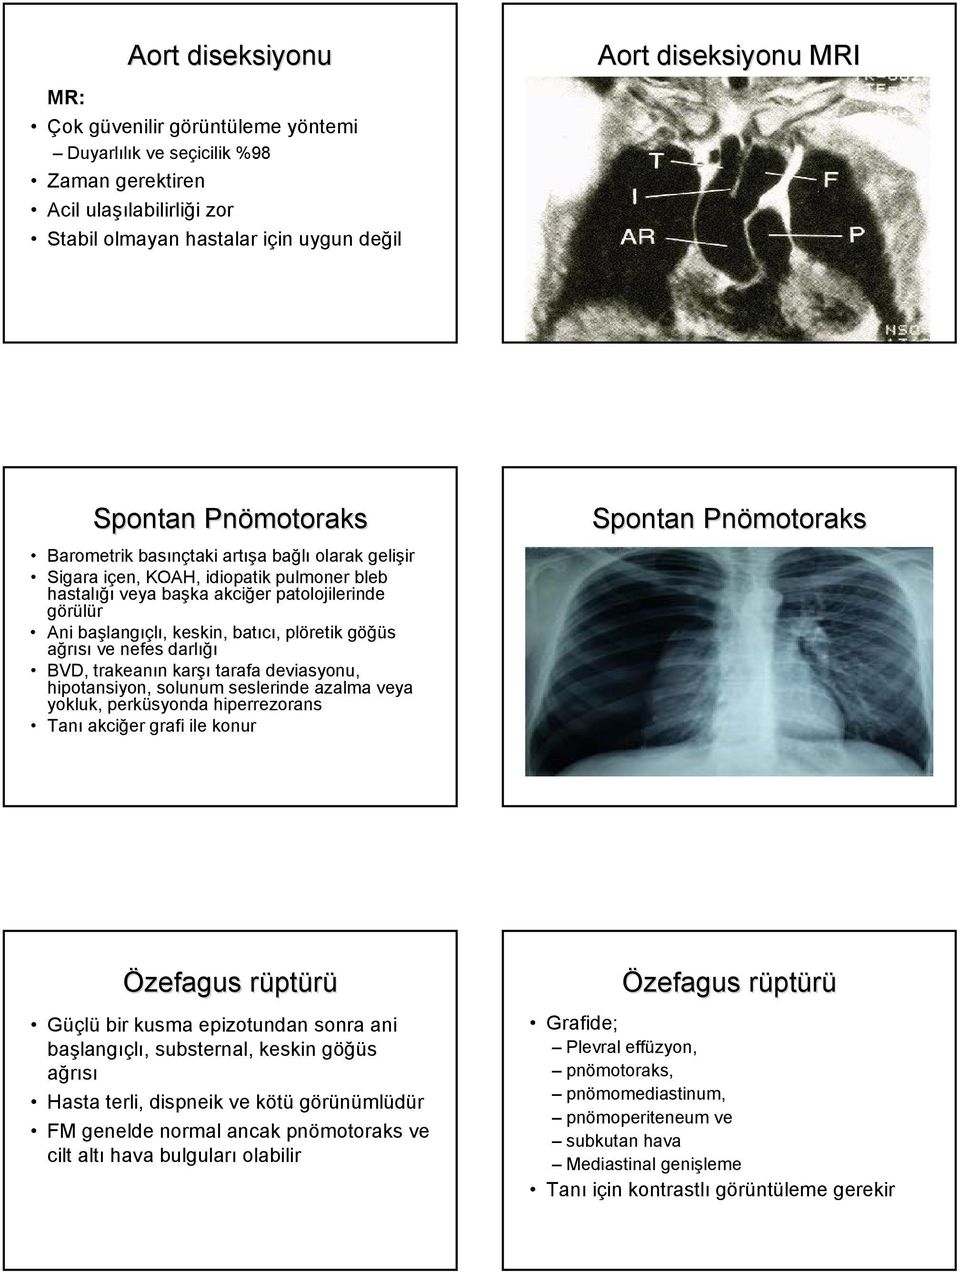 göğüs ağrısı ve nefes darlığı BVD, trakeanın karşı tarafa deviasyonu, hipotansiyon, solunum seslerinde azalma veya yokluk, perküsyonda hiperrezorans Tanı akciğer grafi ile konur Spontan Pnömotoraks